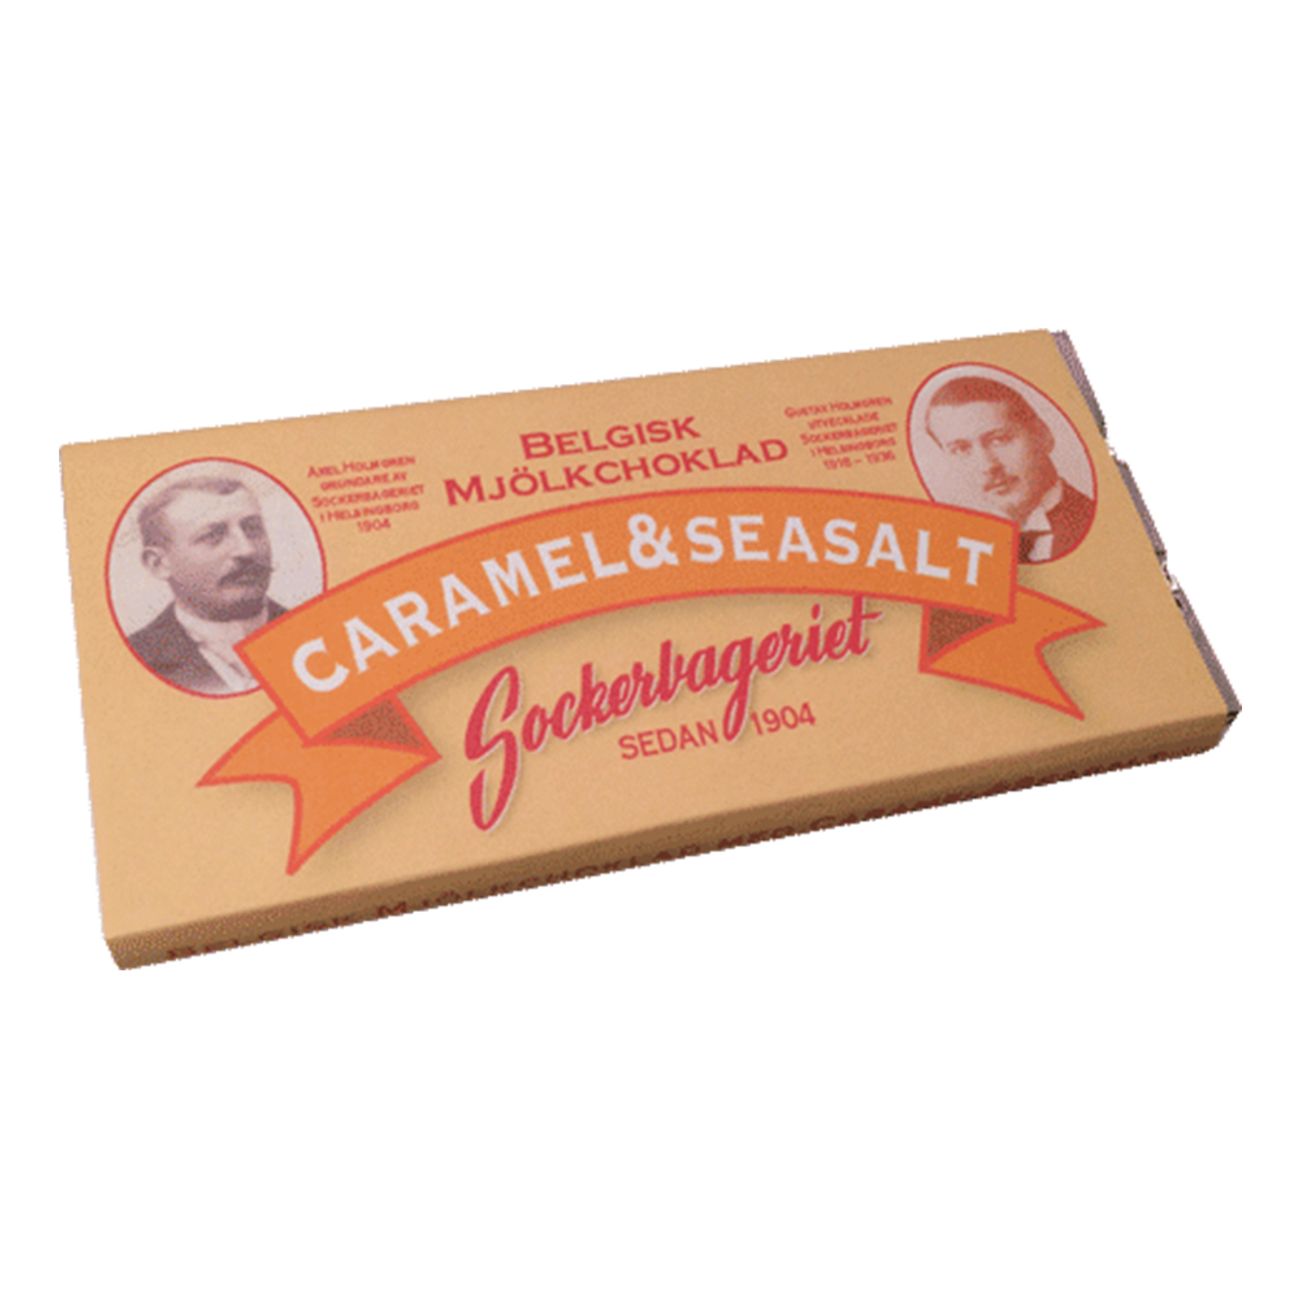 belgisk-mlolkchoklad-caramelseasalt-79447-1